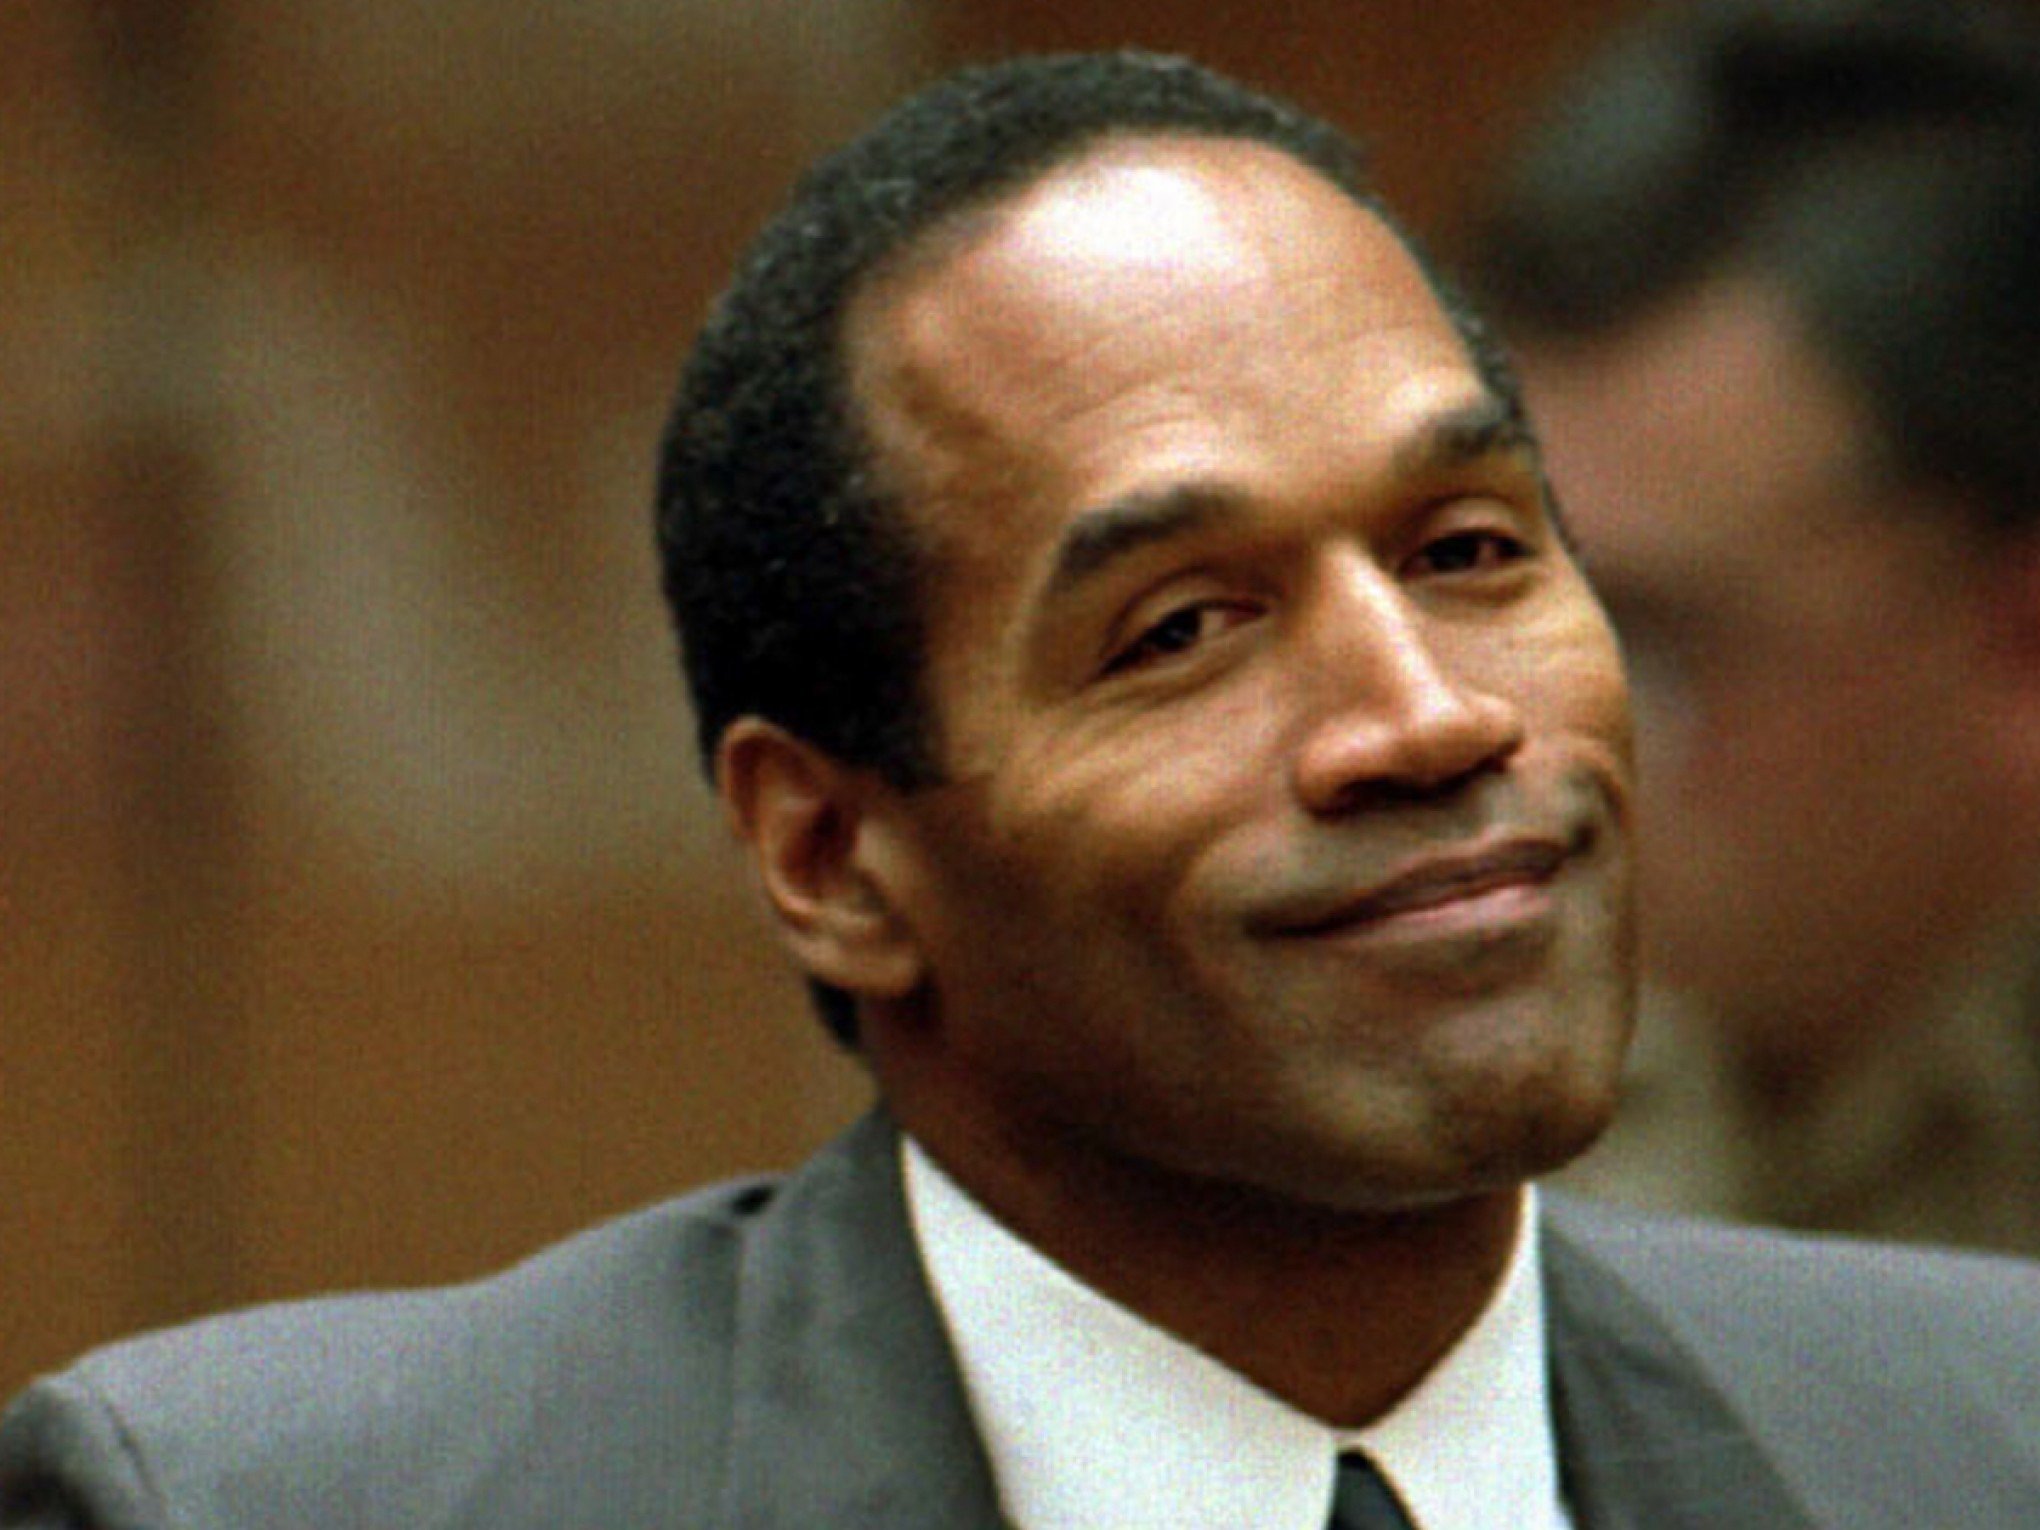 Morre O.J. Simpson, um dos jogadores mais famosos da NFL que foi absolvido de assassinato